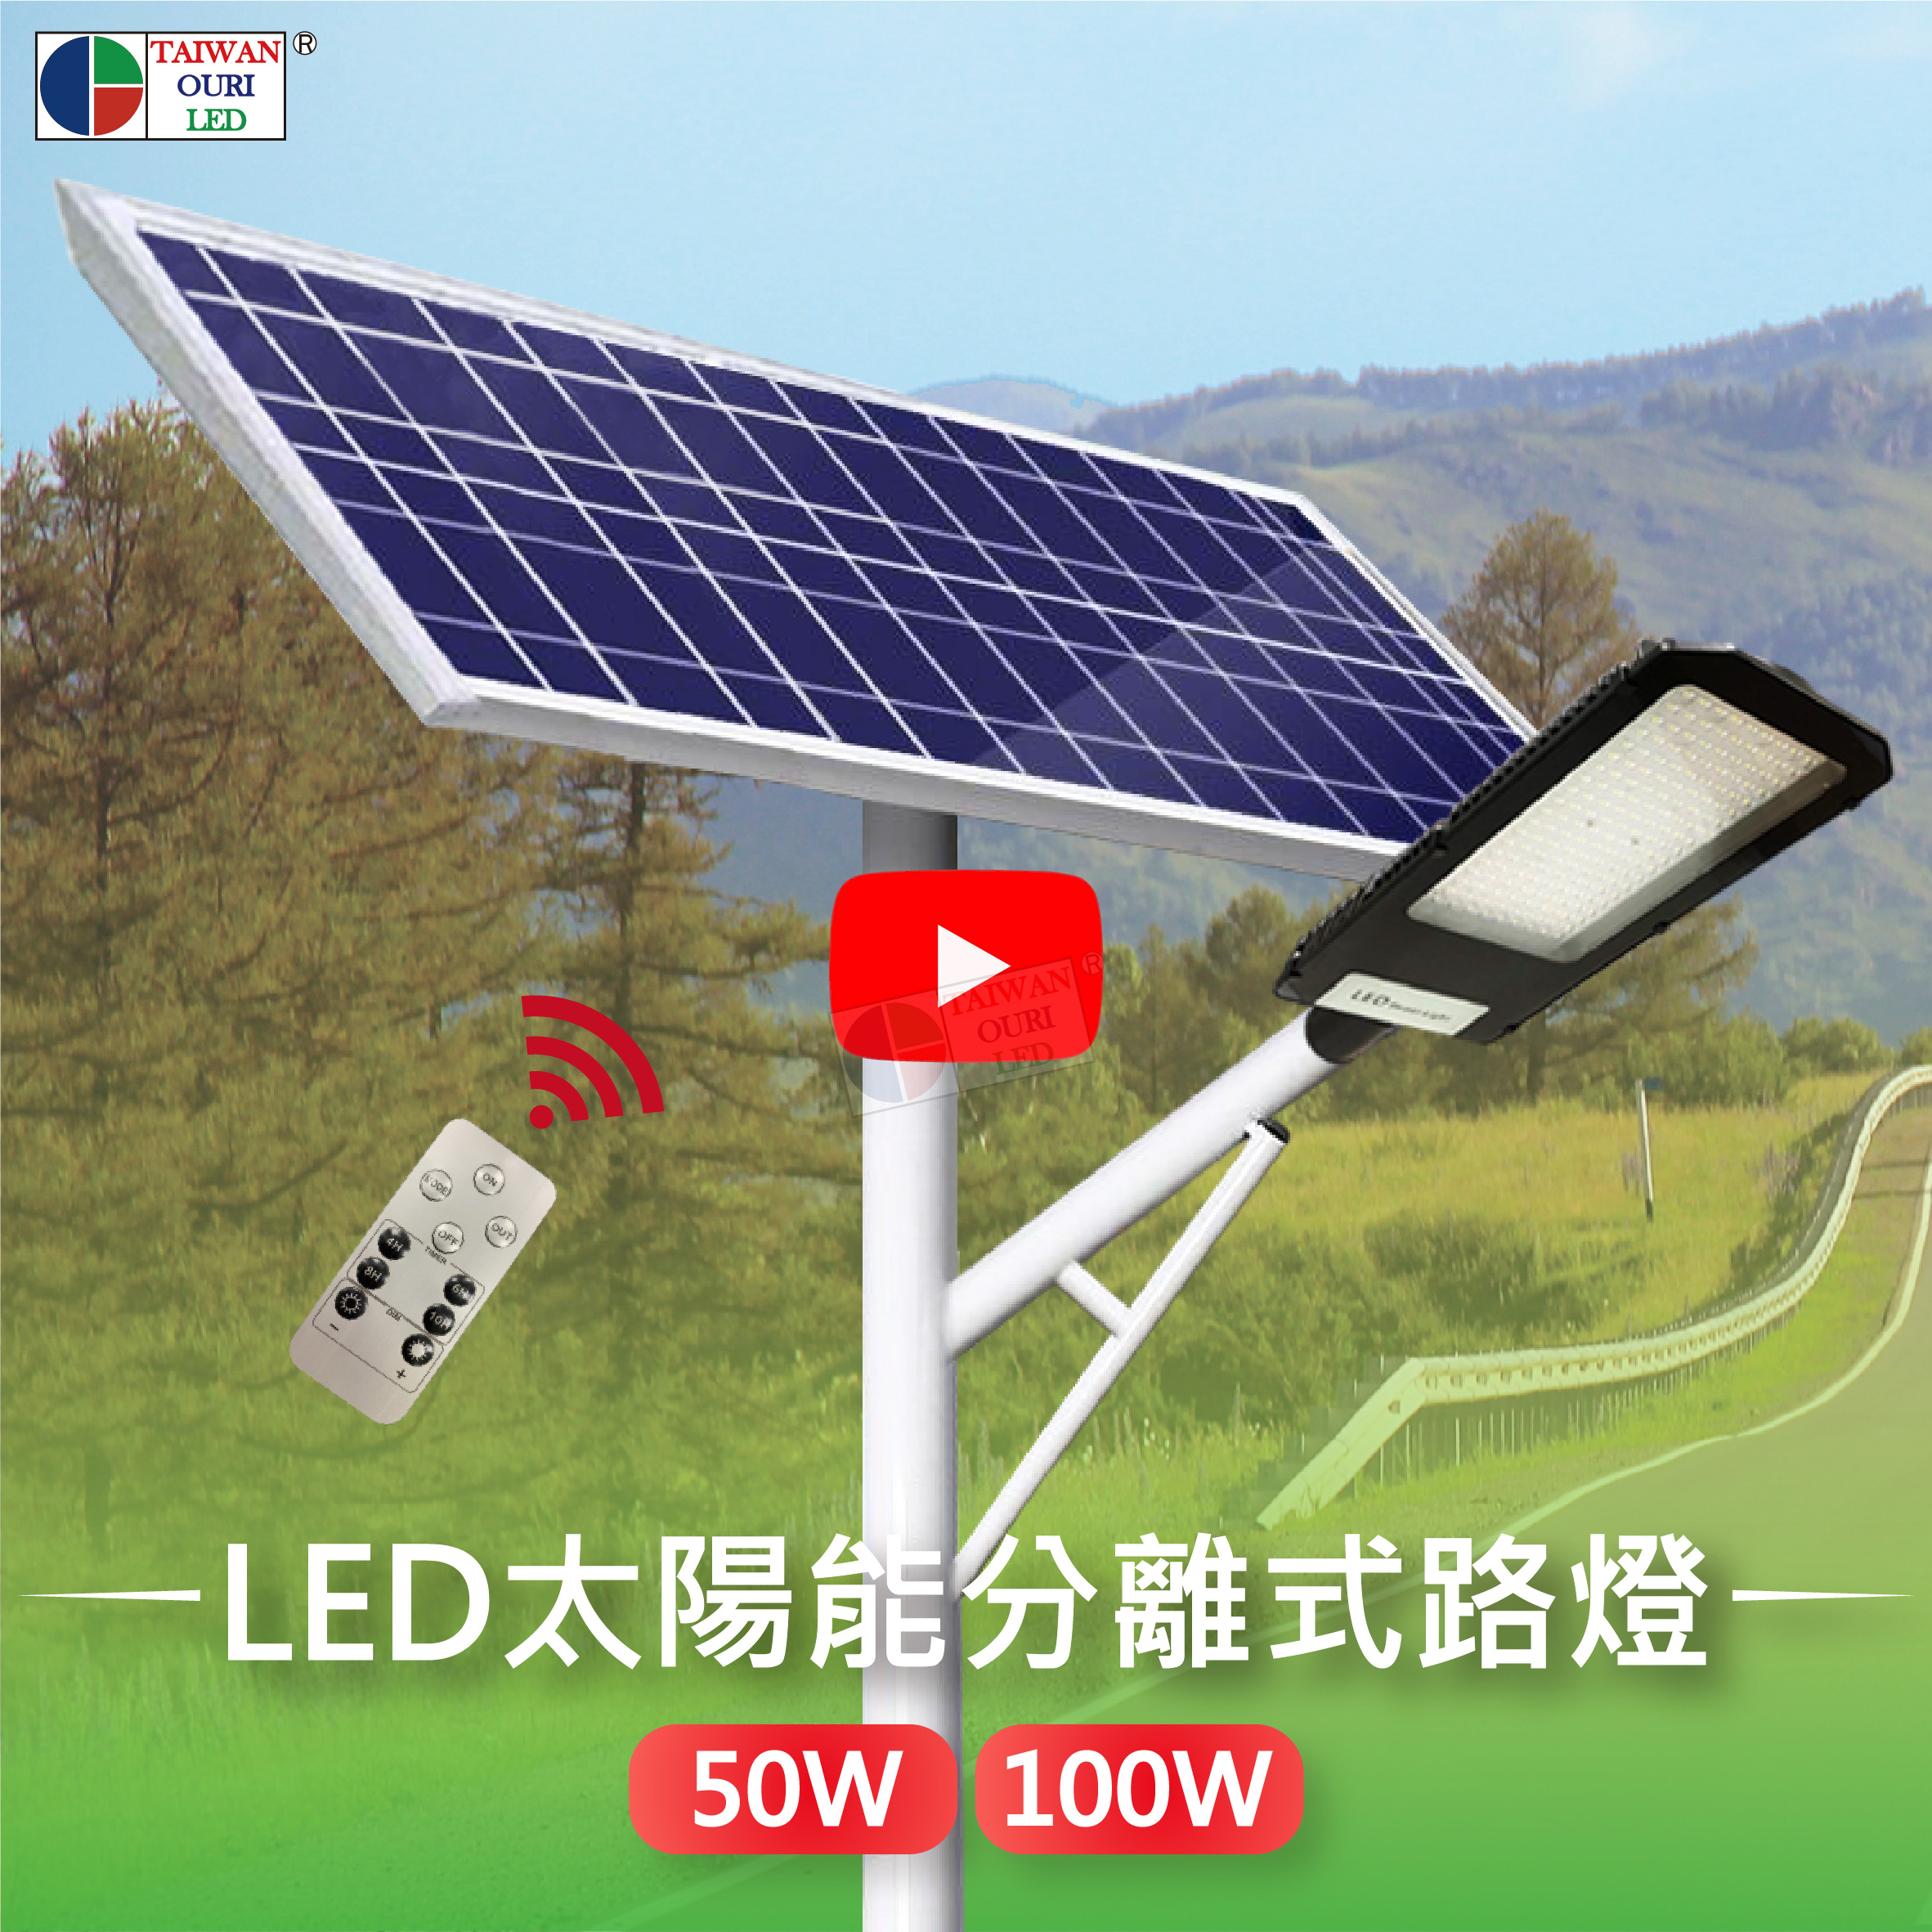 LED分離式太陽能路燈